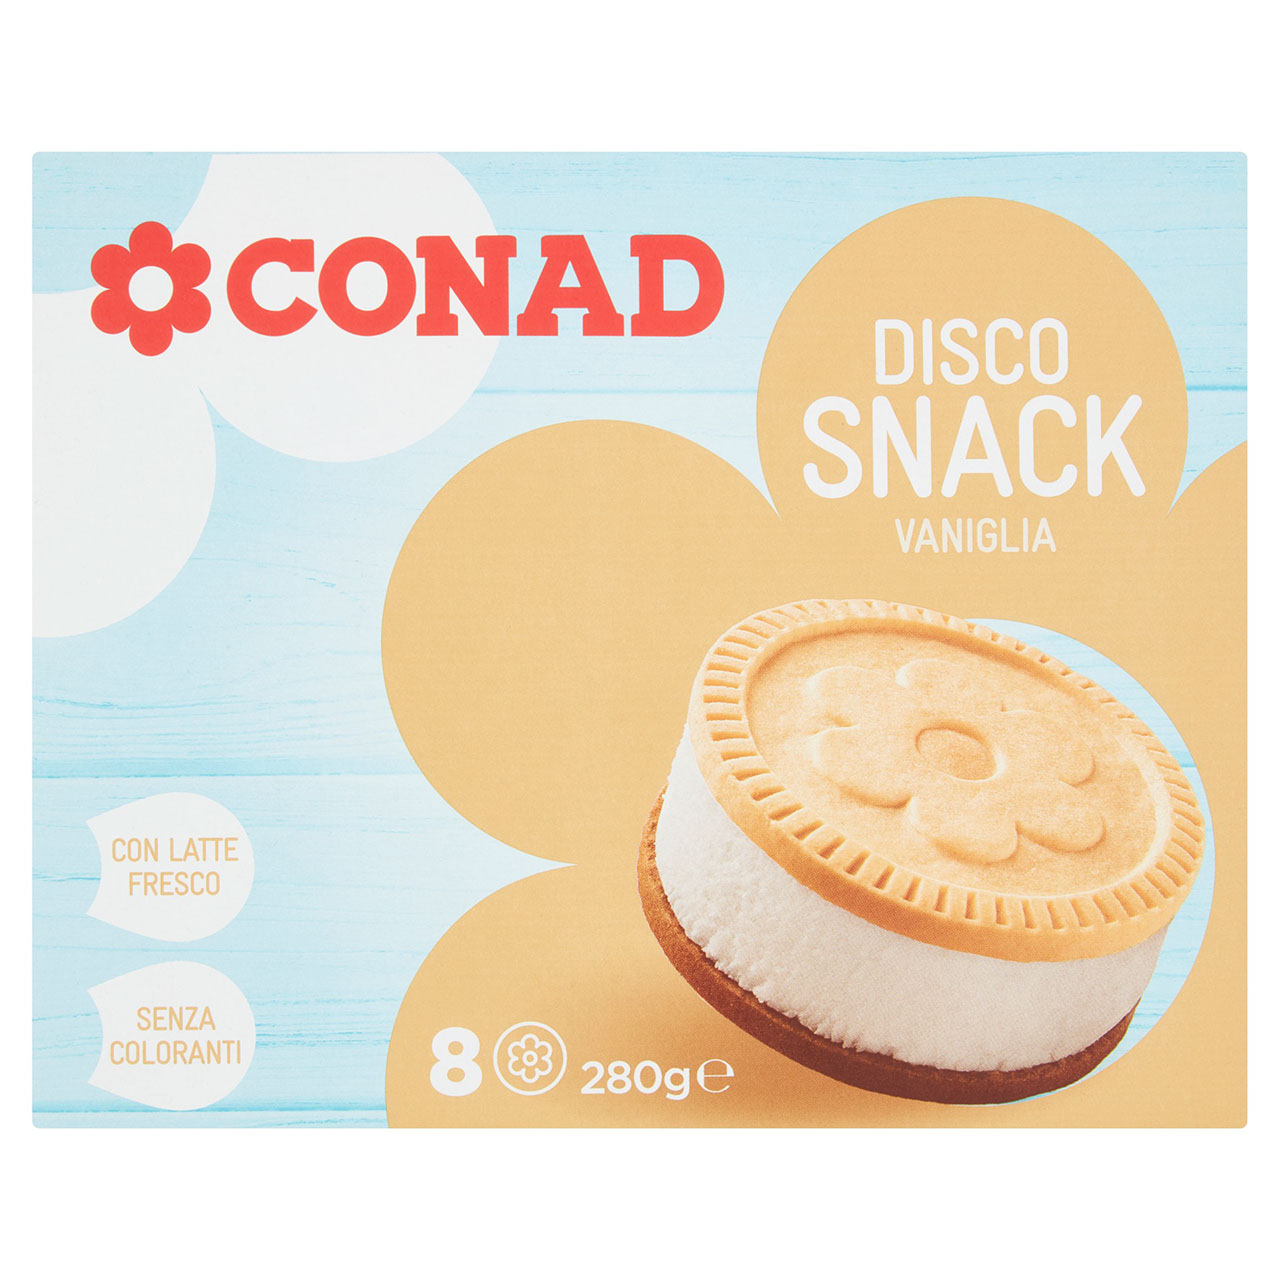 Disco Snack Vaniglia 8 Gelati 280 g Conad